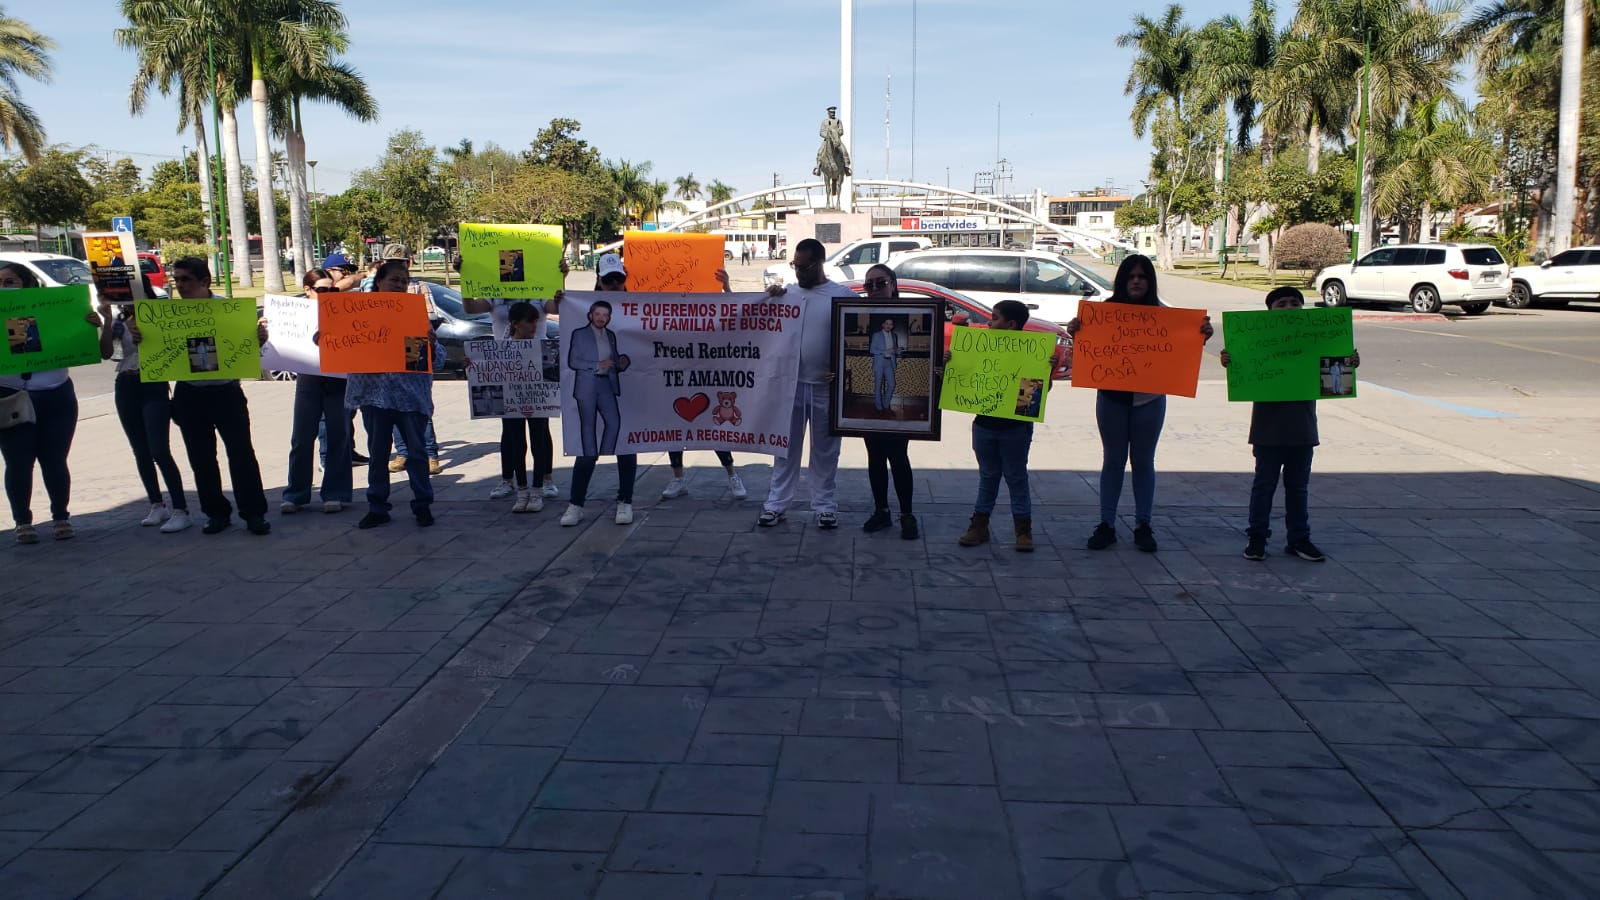 Protestan familiares del joven desaparecido Fredd Gastón Rentería